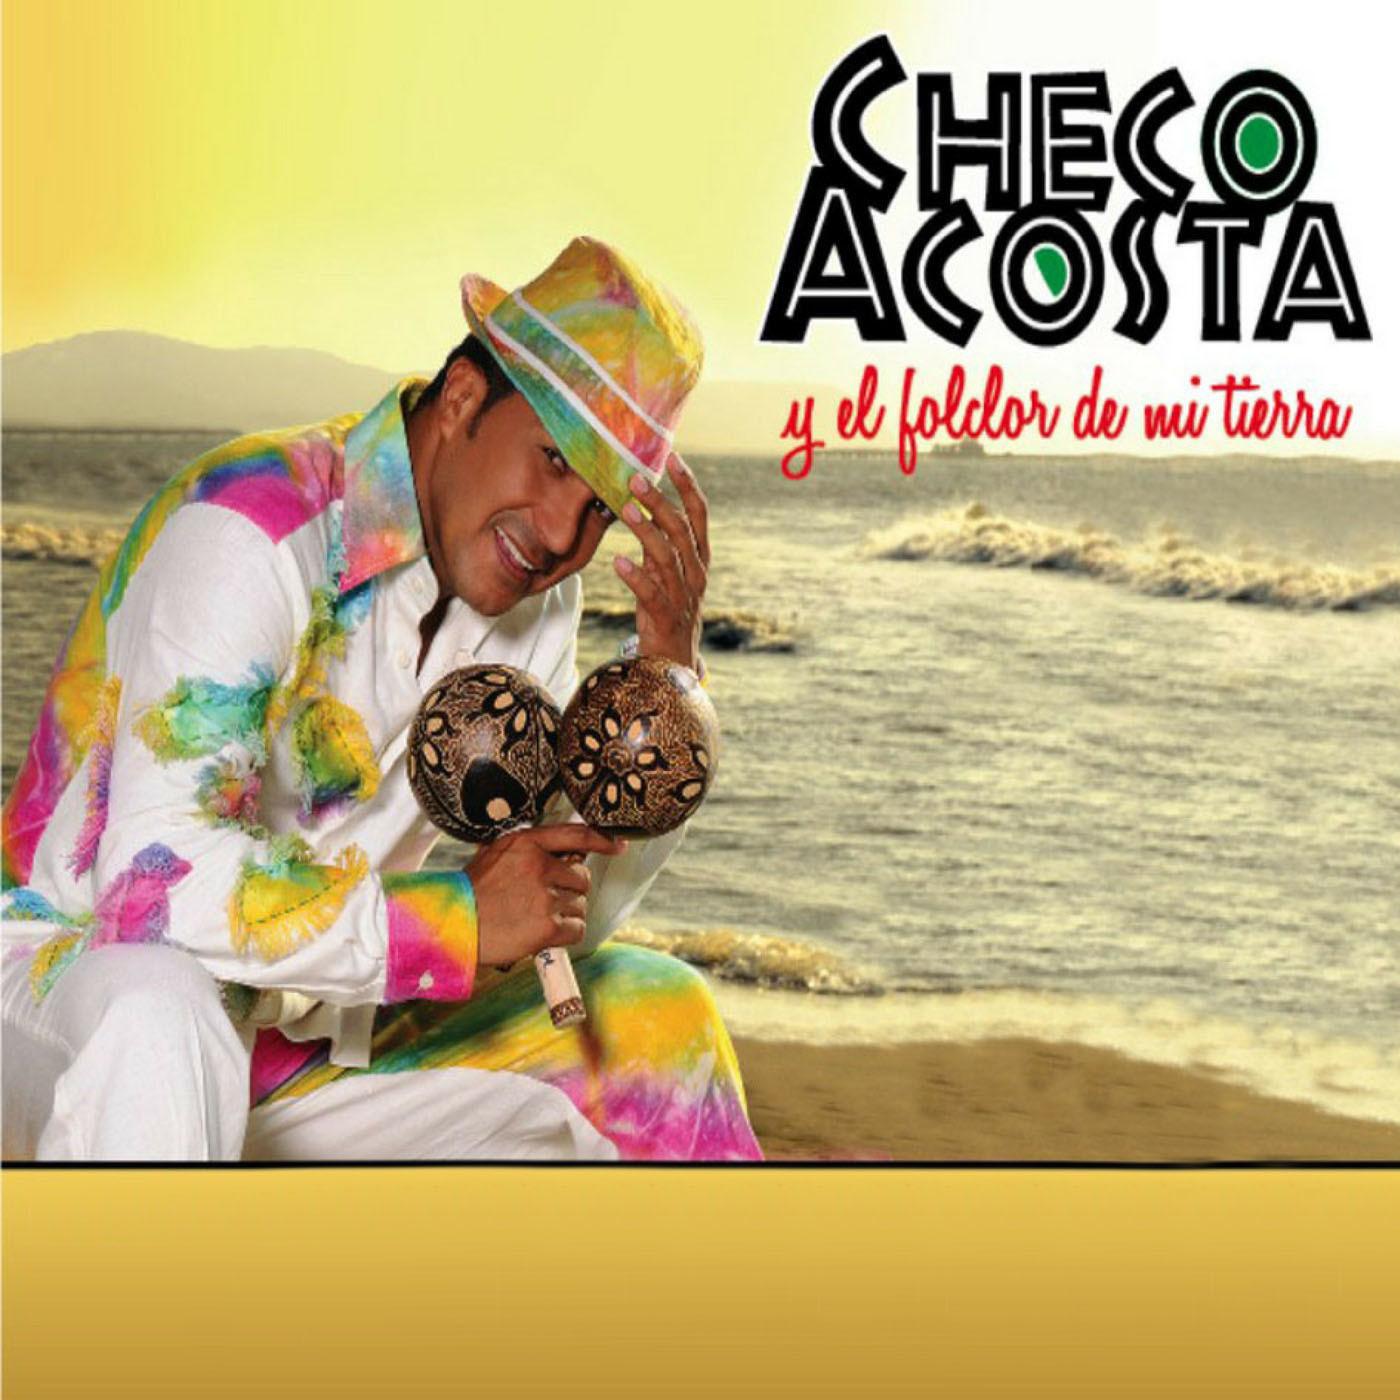 Checo Acosta Y El Folclor De Mi Tierra